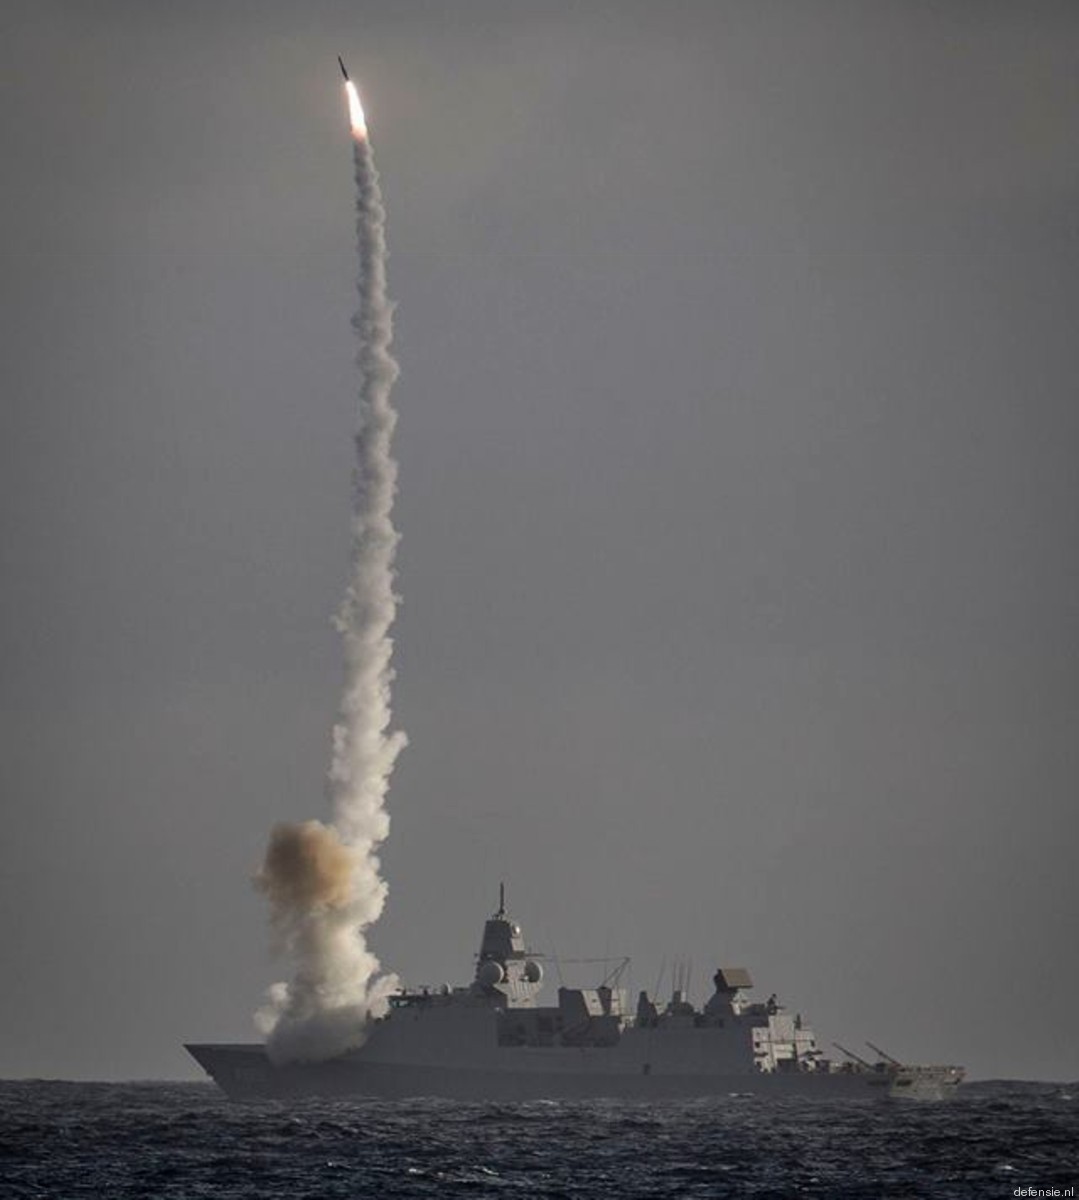 f-802 hnlms de zeven provincien guided missile frigate ffg royal netherlands navy 19